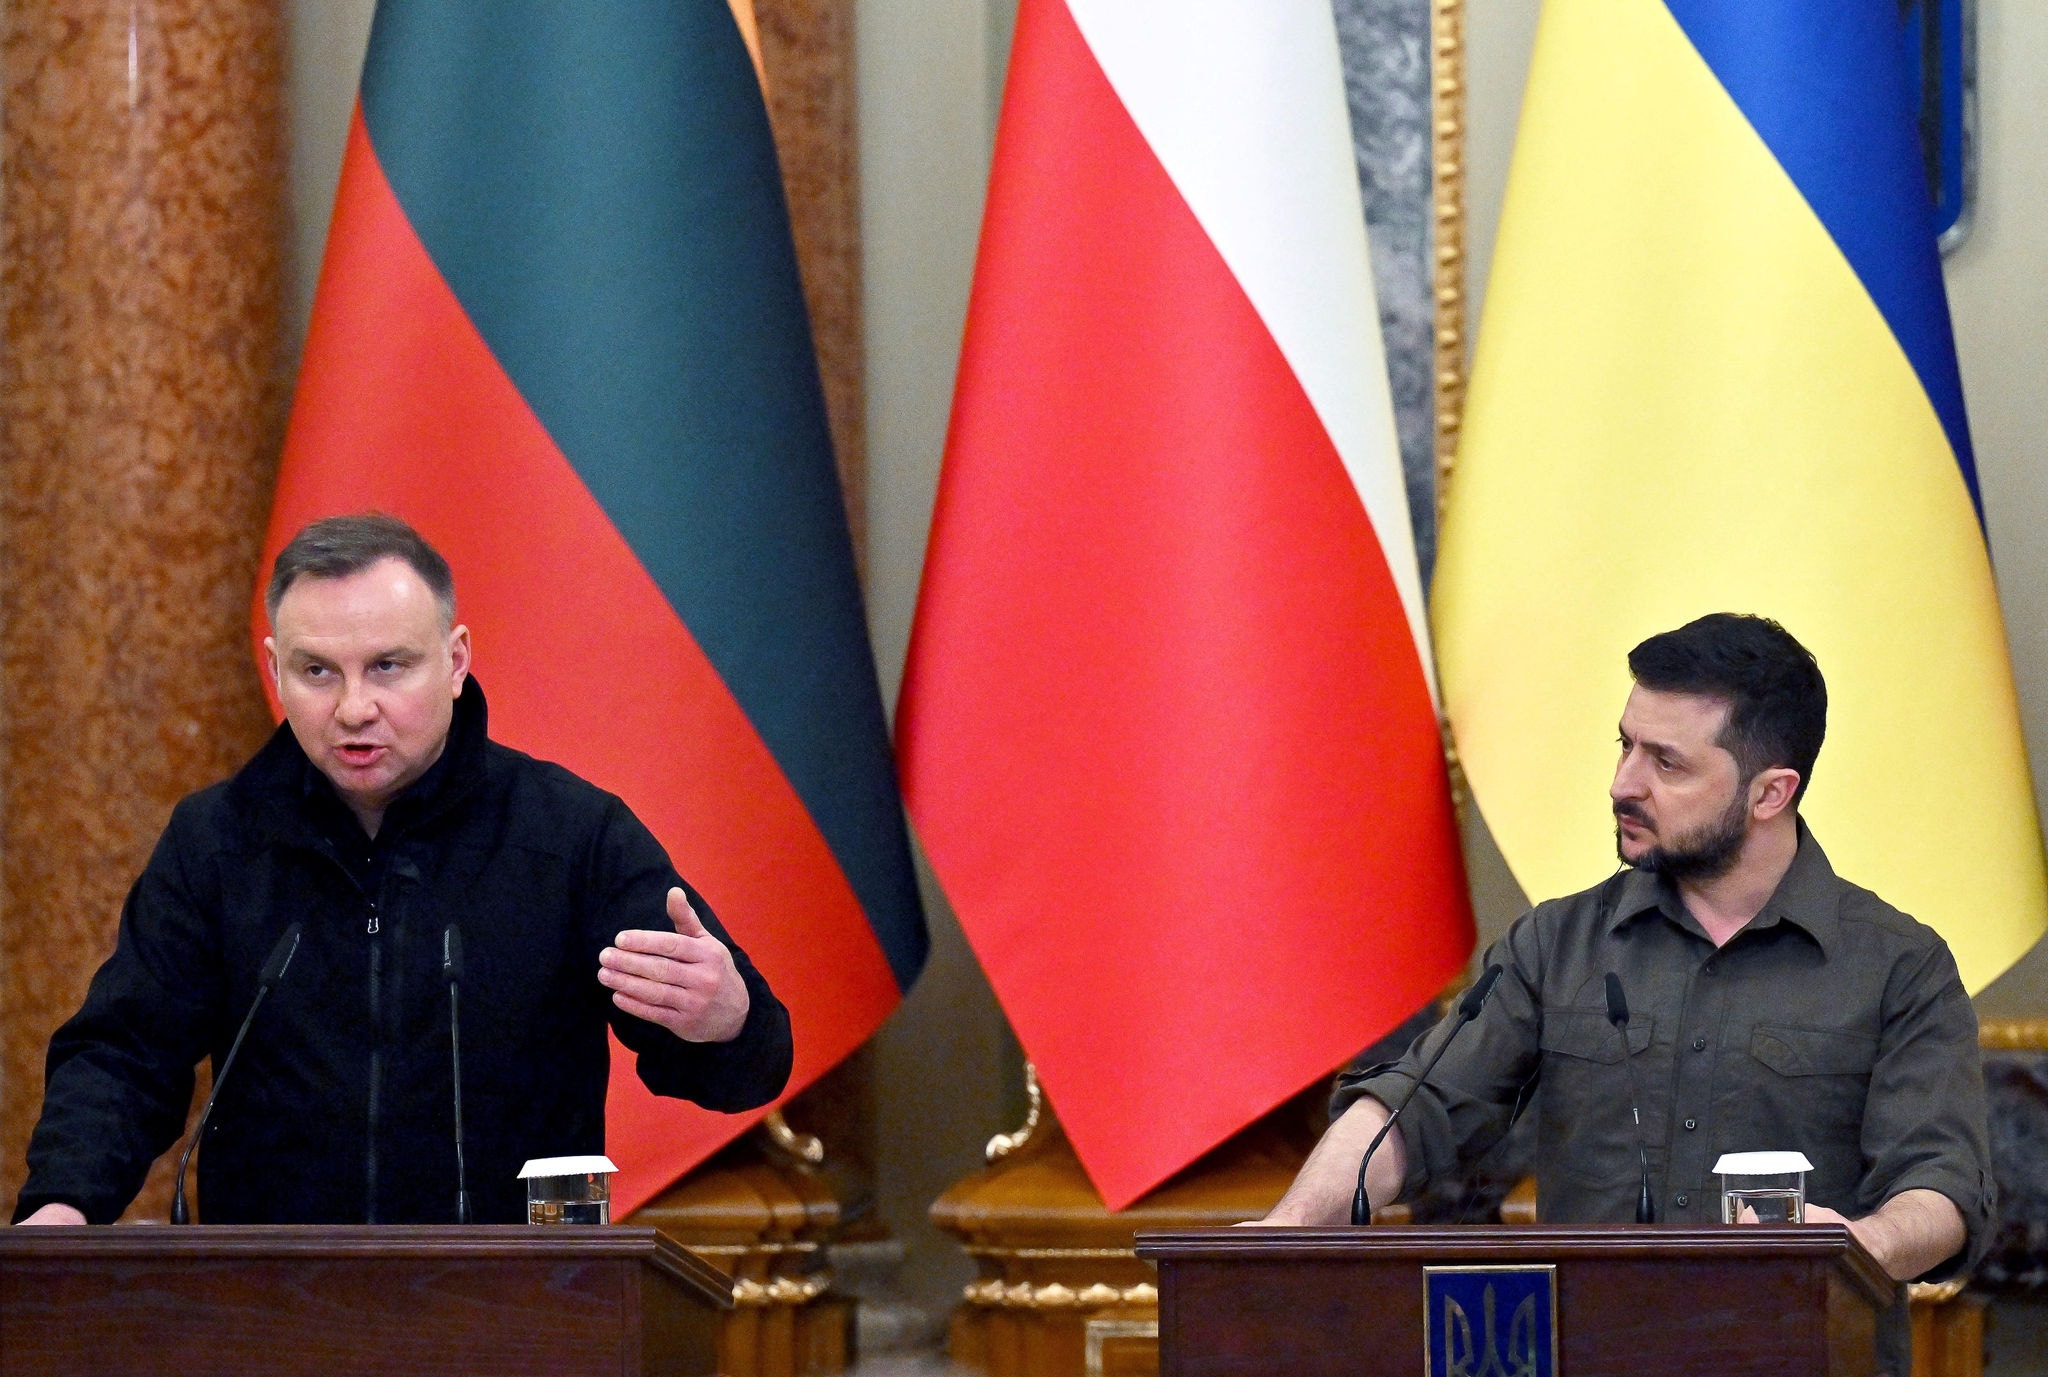 Os presidentes Andrzej Duda, da Polônia, e Volodymyr Zelensky, da Ucrânia